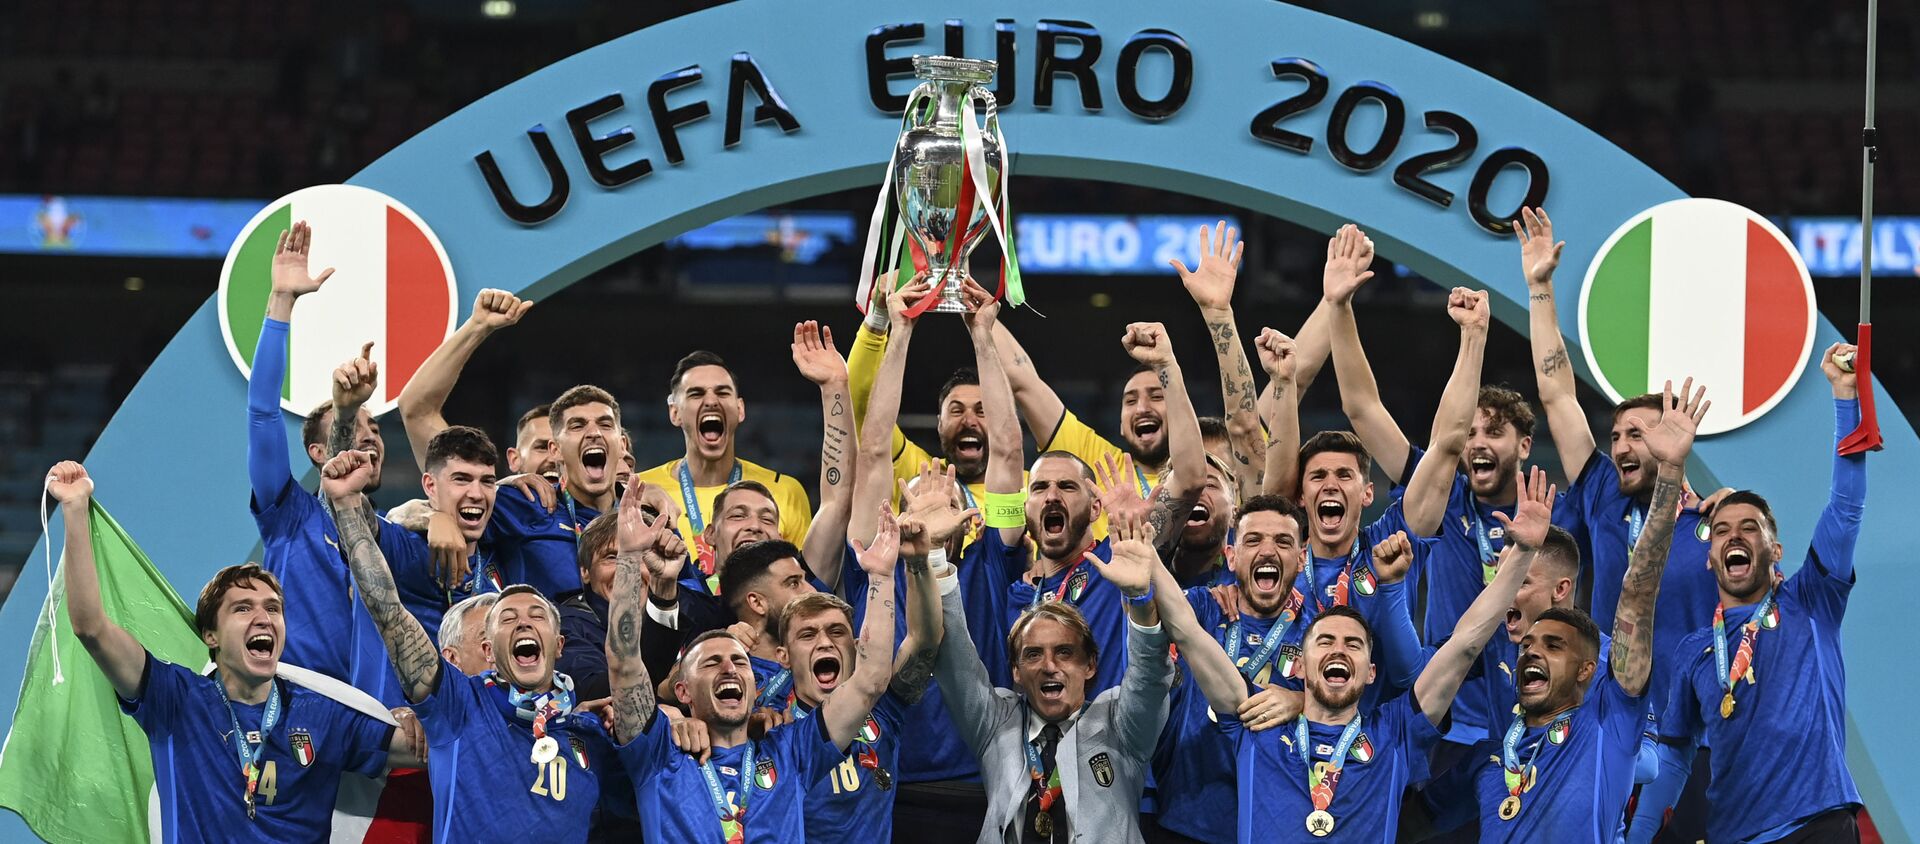 Đội tuyển quốc gia Ý ăn mừng trên bục vinh quang sau khi giành phần thắng trong trận chung kết Euro 2020 - Sputnik Việt Nam, 1920, 12.07.2021